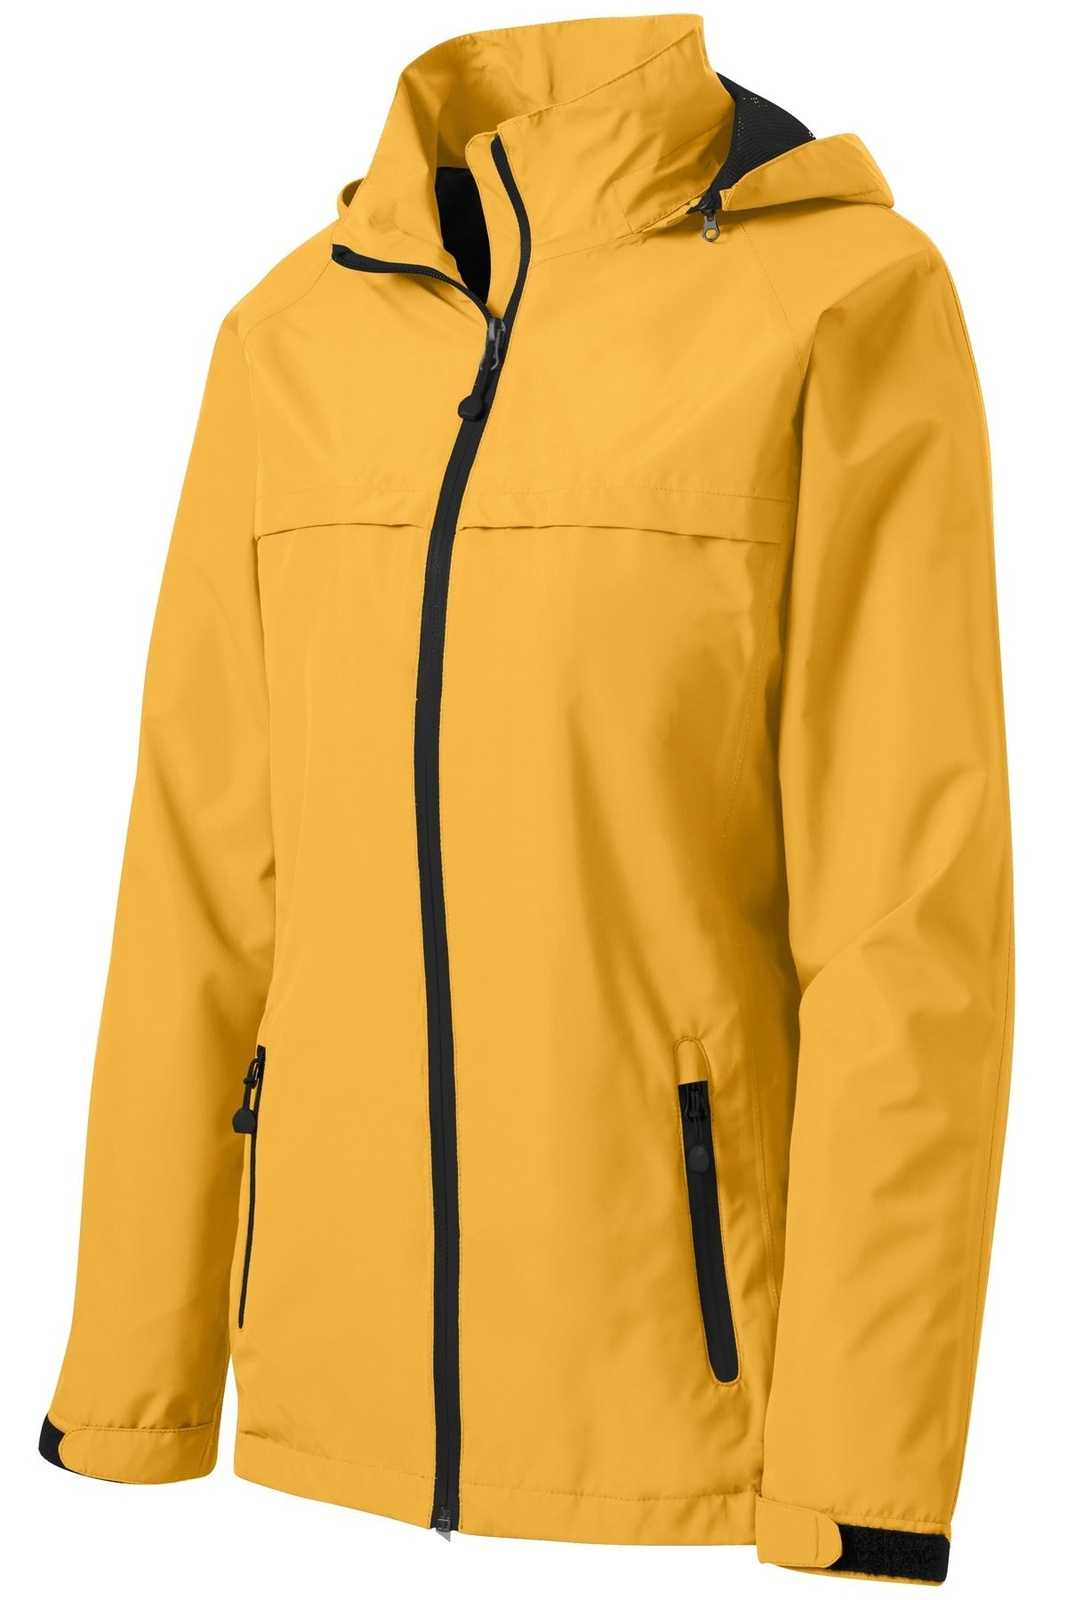 Port Authority L333 Ladies Torrent Waterproof Jacket - Slicker Yellow - HIT a Double - 5